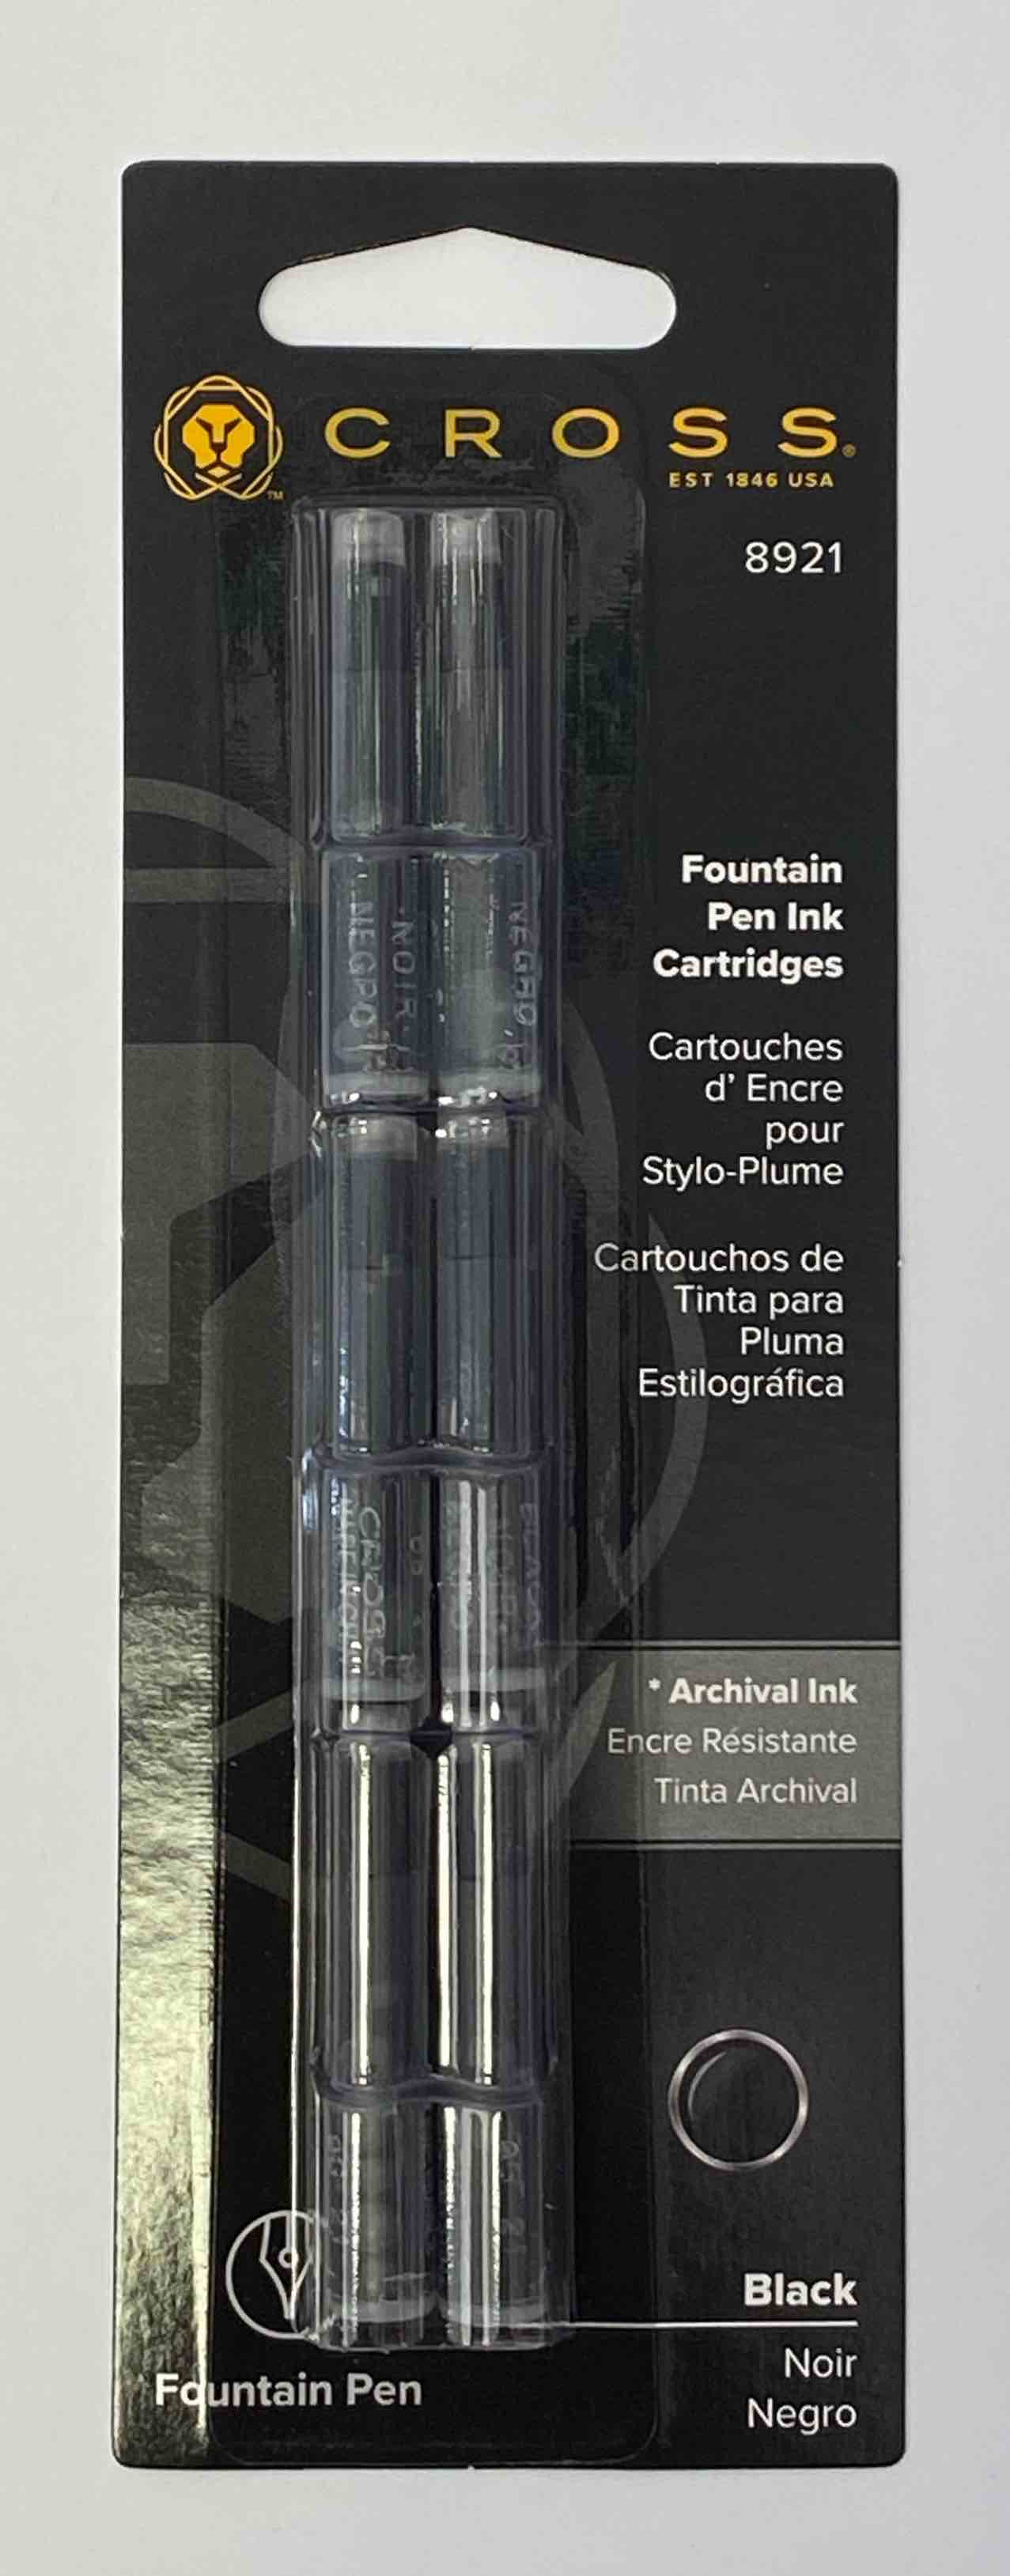 Cross Fountain Pen Ink Cartridges 6 in a Package